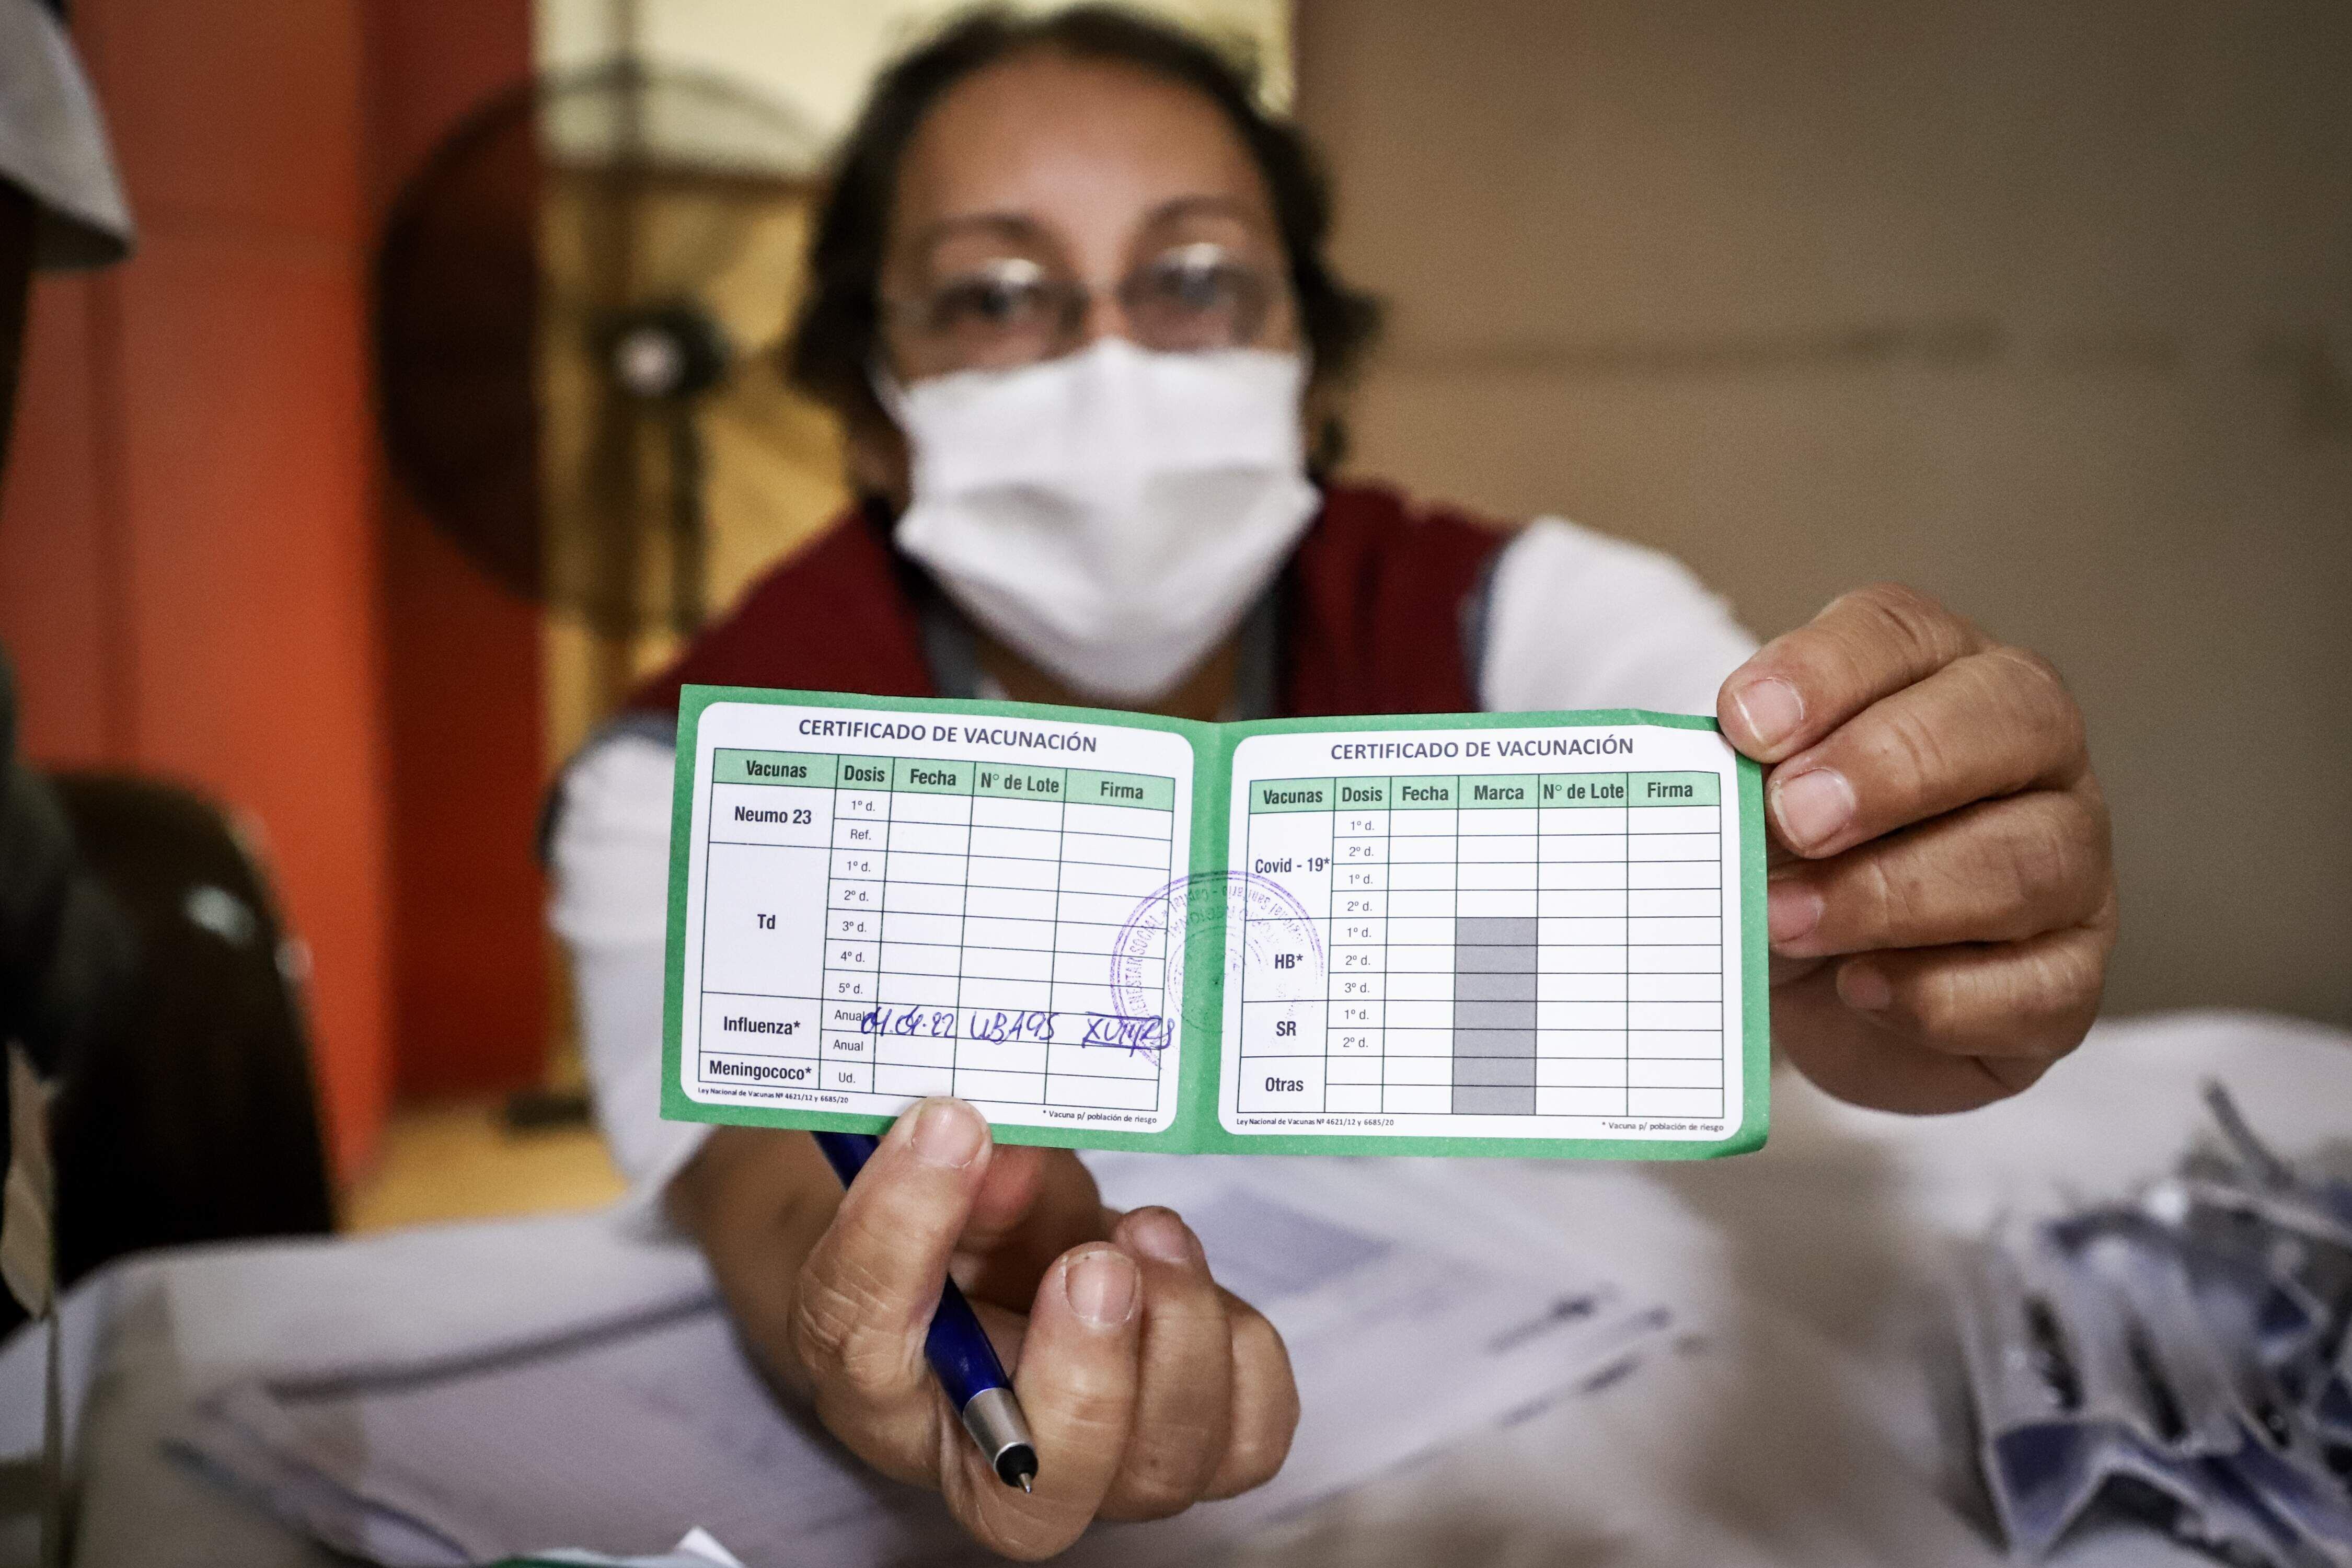 La vacunación primaria en Paraguay es de dos dosis, al que se suma una dosis de refuerzo a los 4 meses y otra dosis adicional a los 6 meses exclusivo para mayores de 50 años y personas con enfermedades de base. 